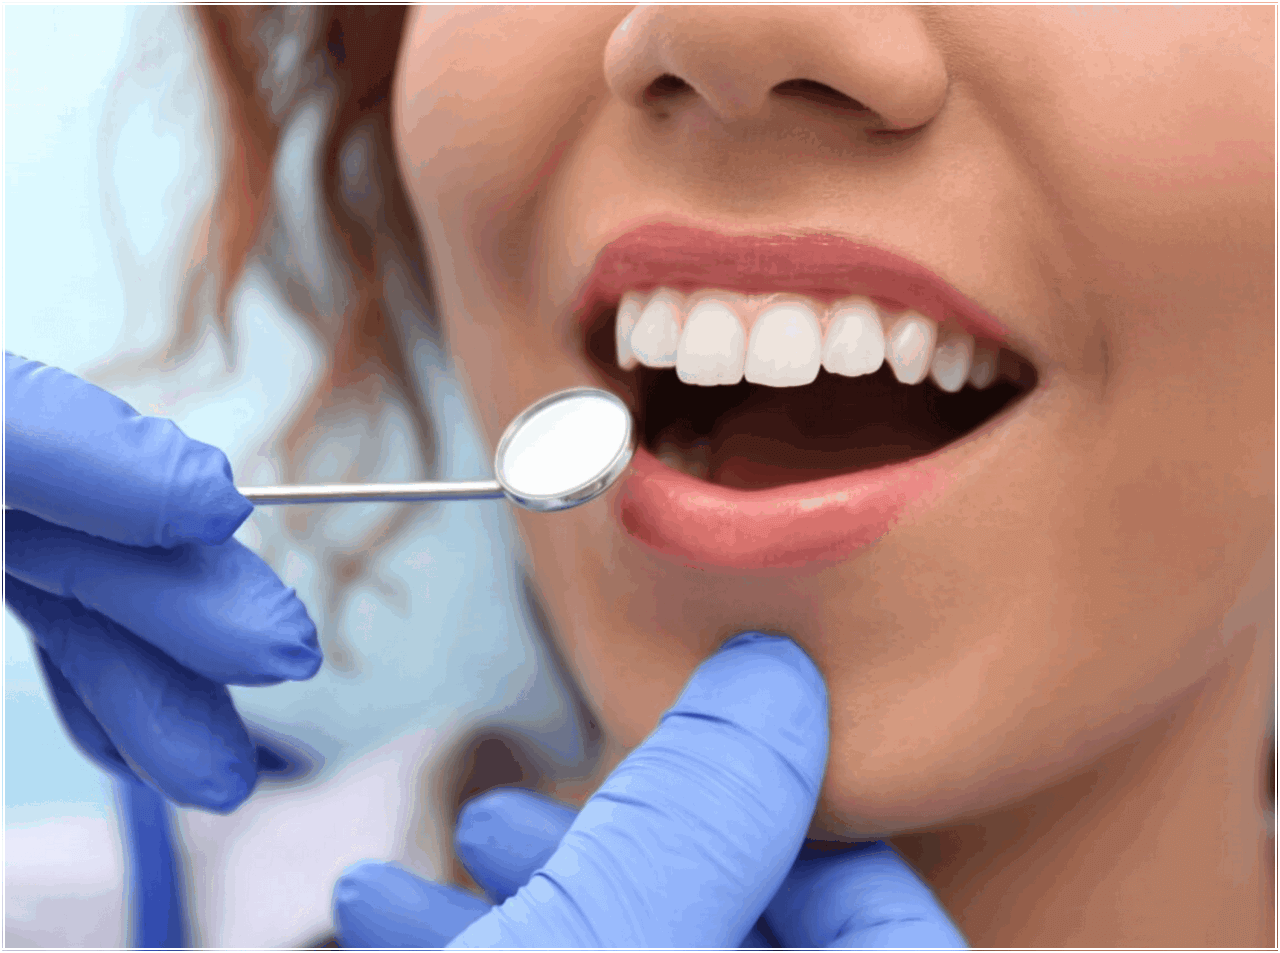 Гигиена полости рта стоимость. Профгигиена (ультразвук + Air-Flow). Профессиональная гигиена полости рта. Гигиена полости рта в стоматологии. Профессиональная гигиена полости рта в стоматологии.